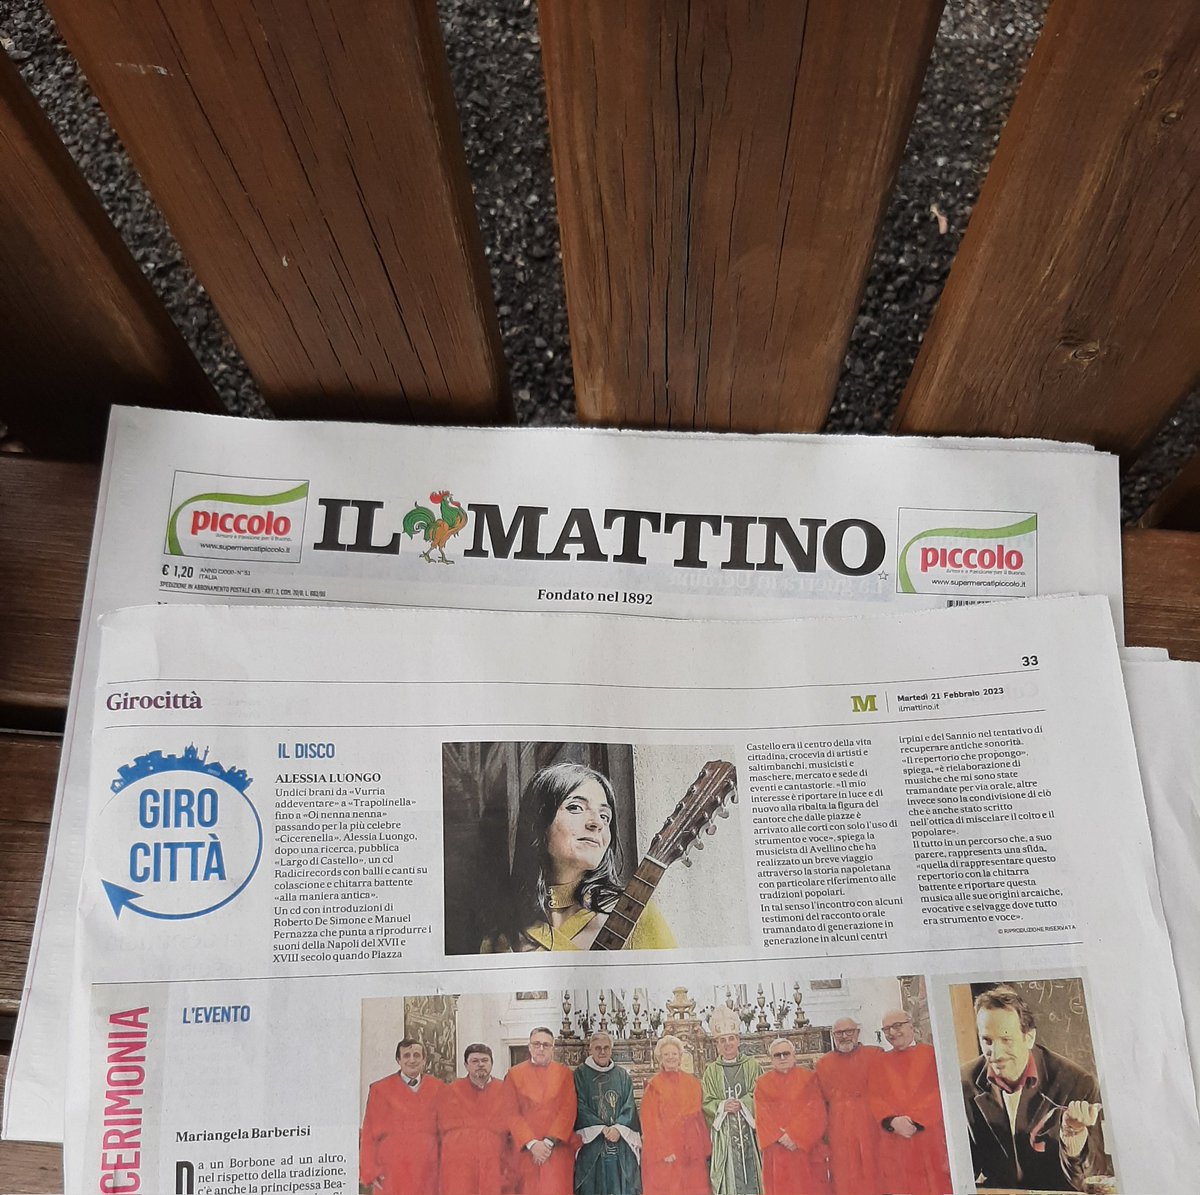 Oggi 'Il Mattino' parla di 'Largo di Castello' 
#IlMattino #newspaper #giornale #Journal #chitarrabattente #musicaantica #musicaantigua